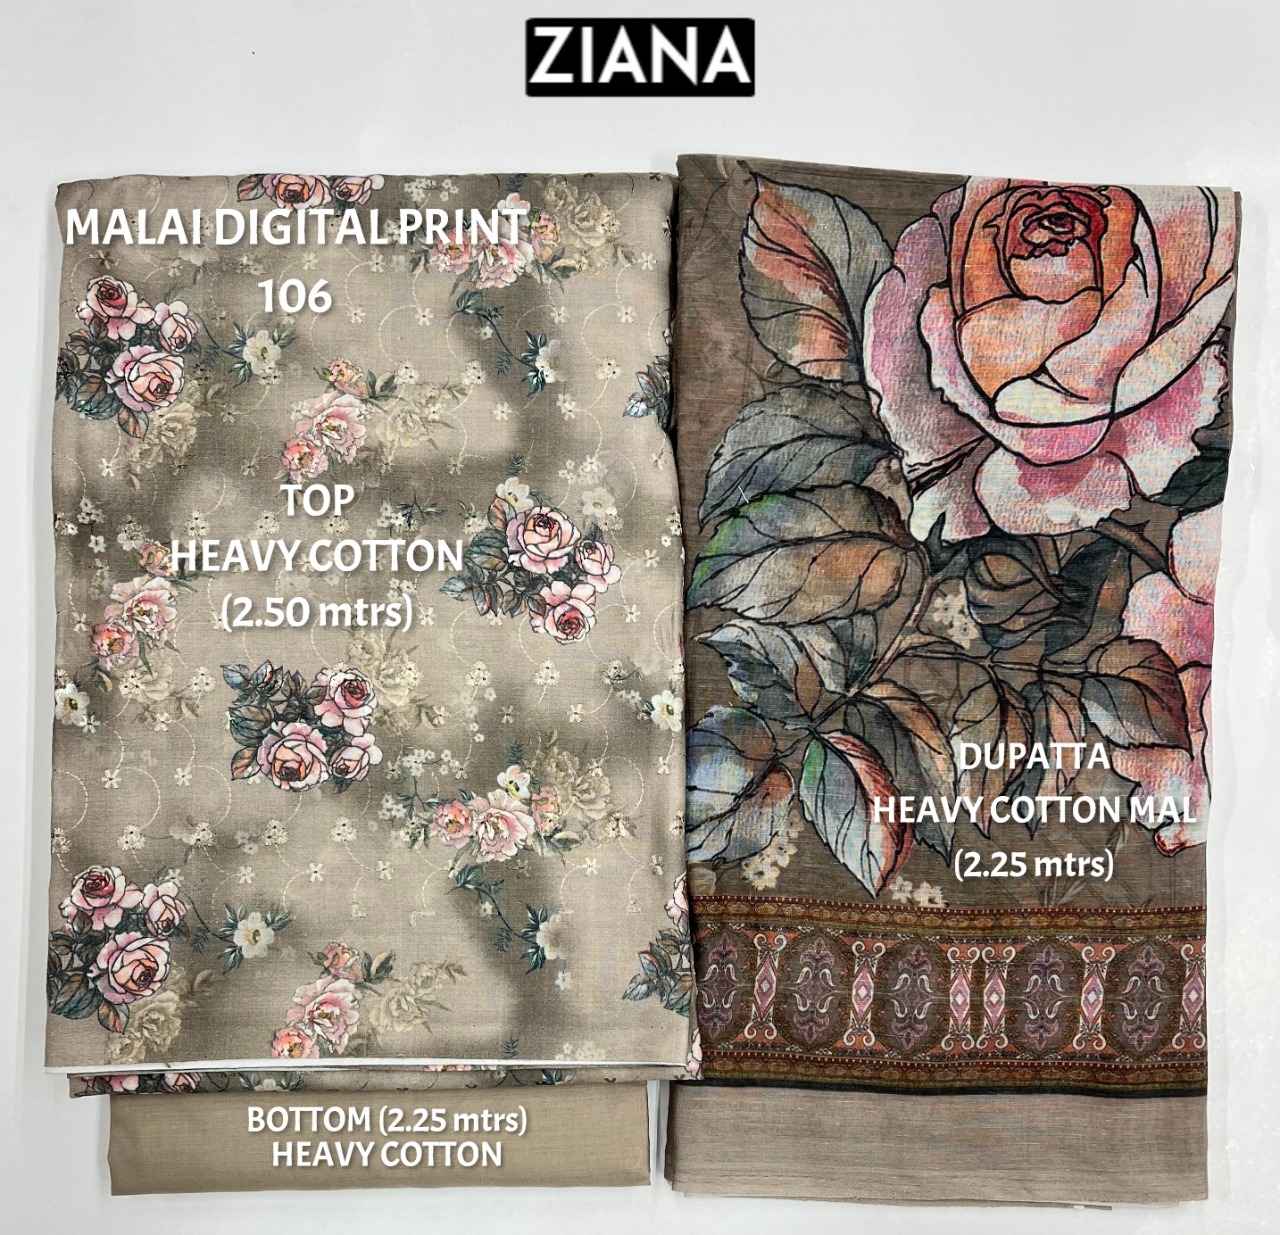 ziana malai digital 106 cotton authentic fabric salwar suit colour set